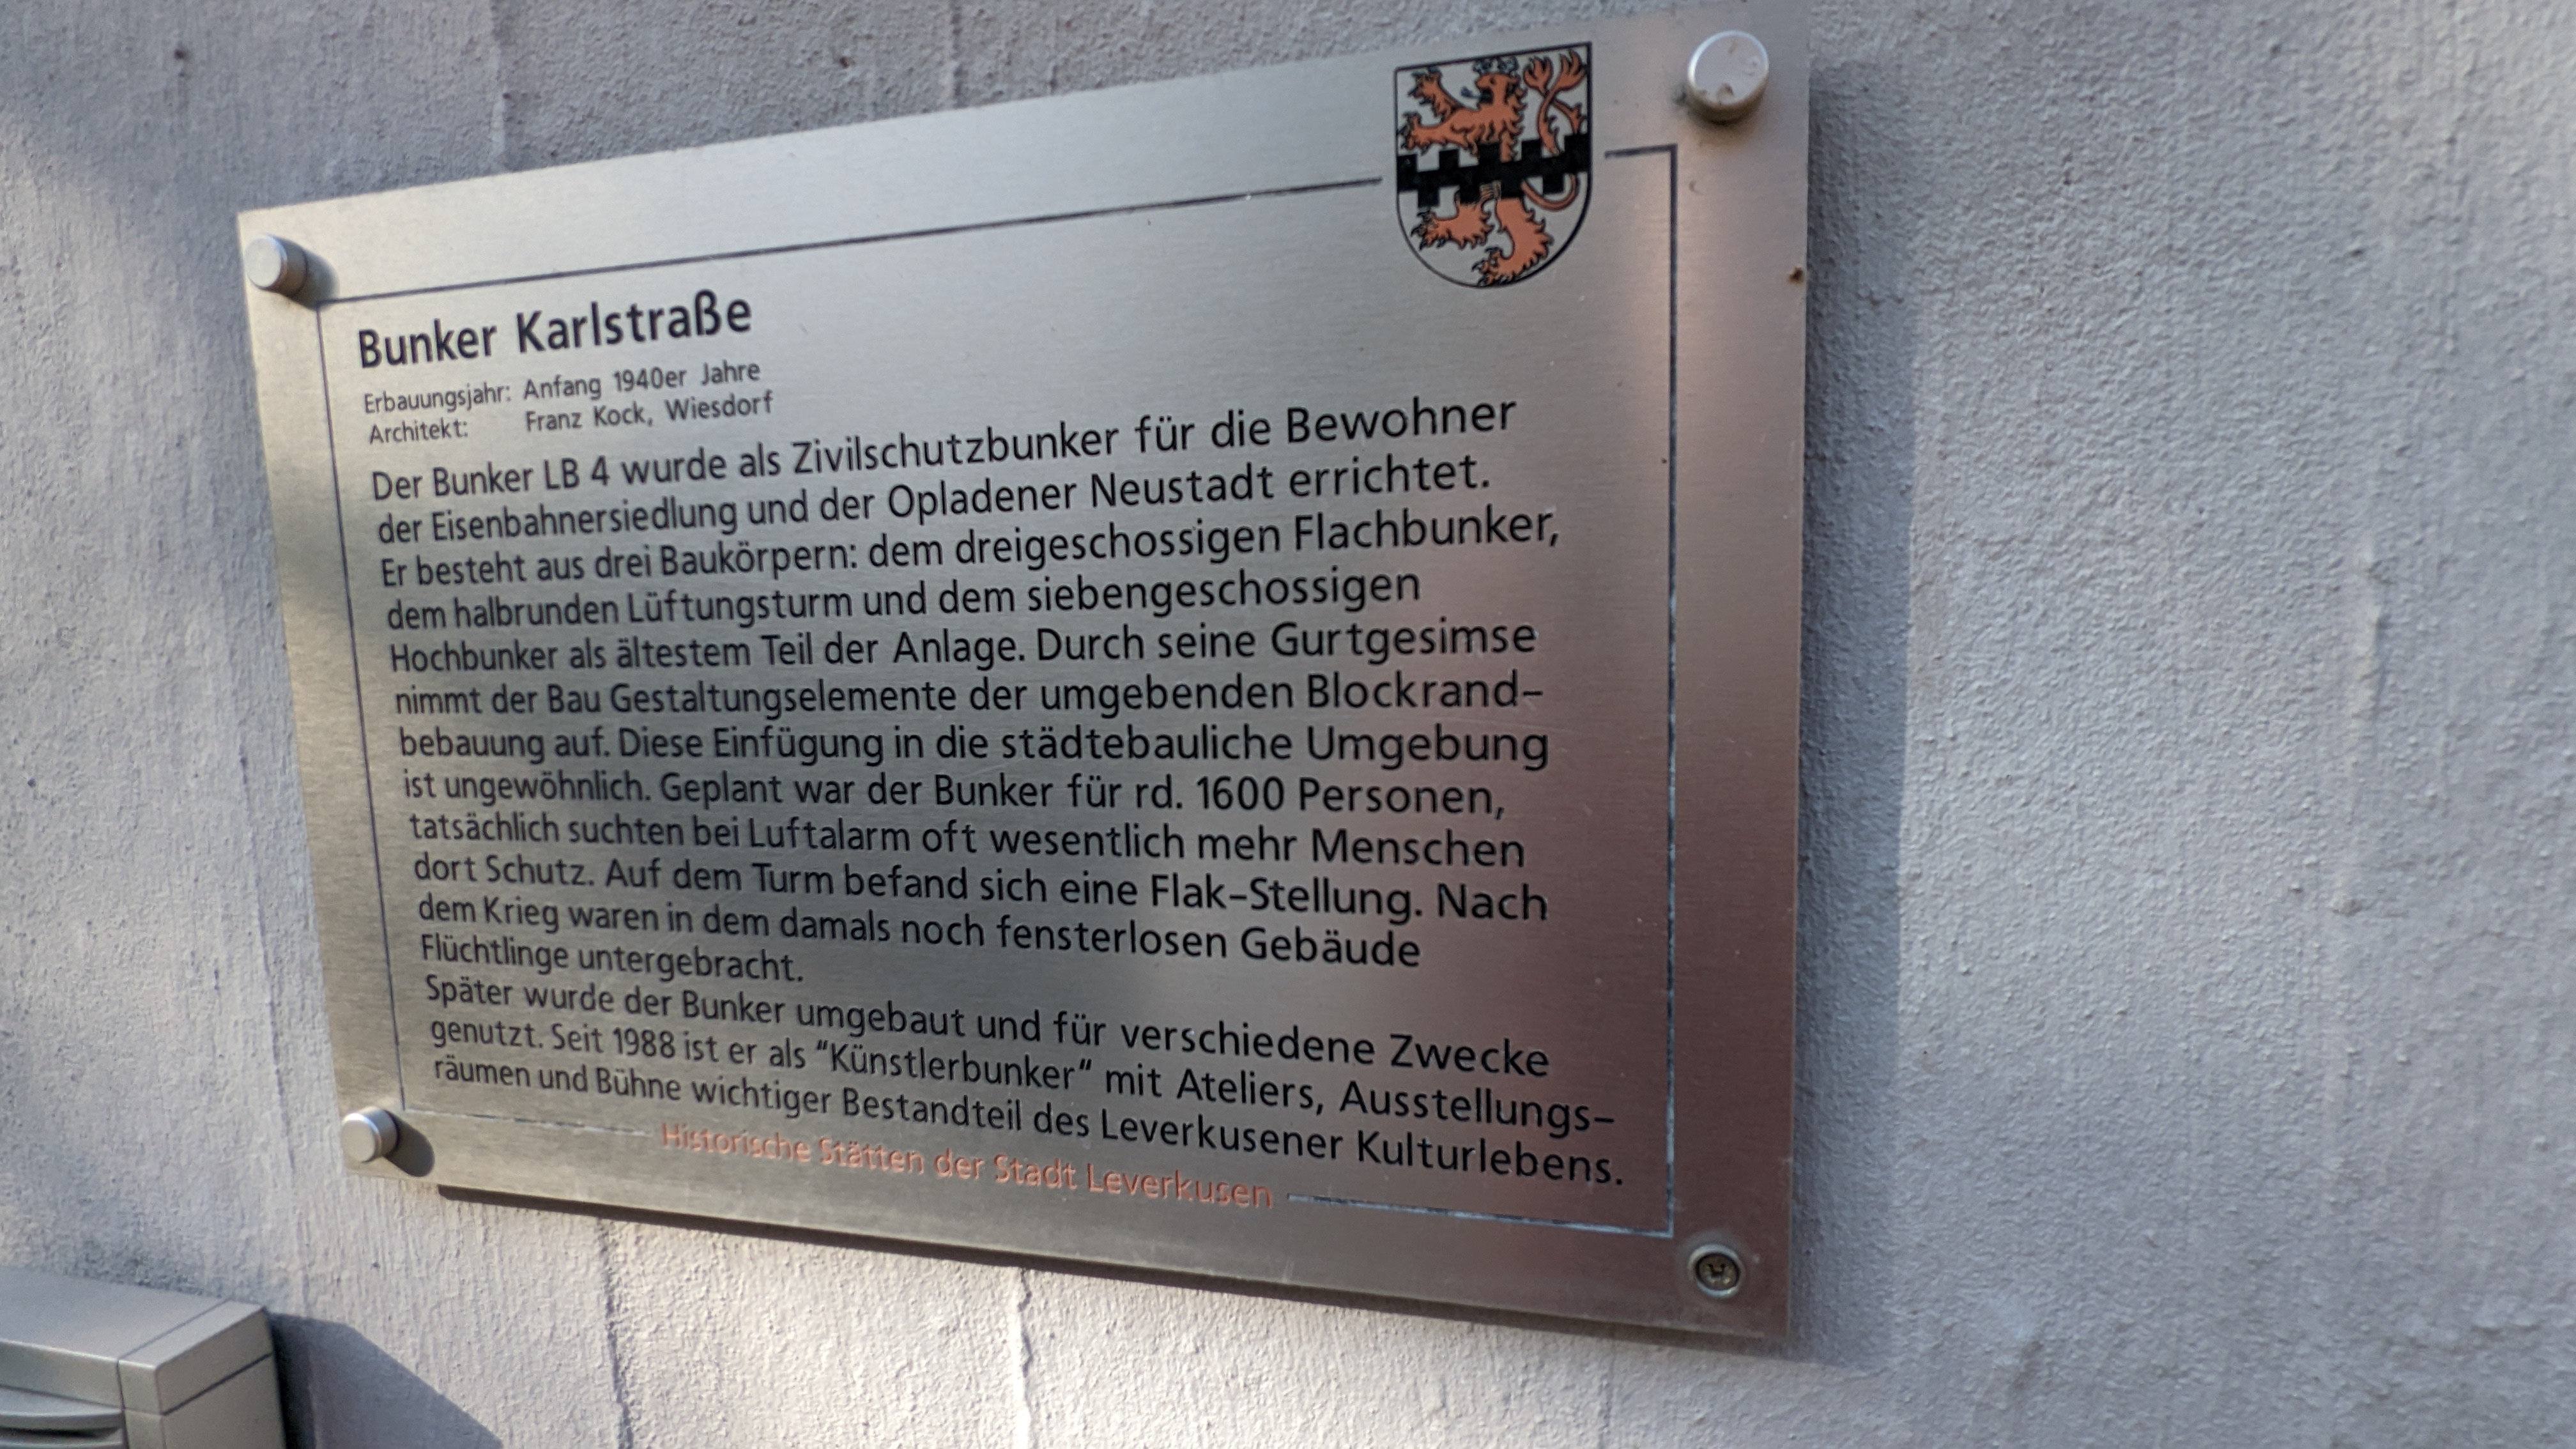 Dieses Schild befindet sich am Künstlerbunker in der Karlstraße. Es erklärt die Geschichte des Bunkers. Es ist ein Teil der Schilder, die "Historische Städten der Stadt Leverkusen" erklären.